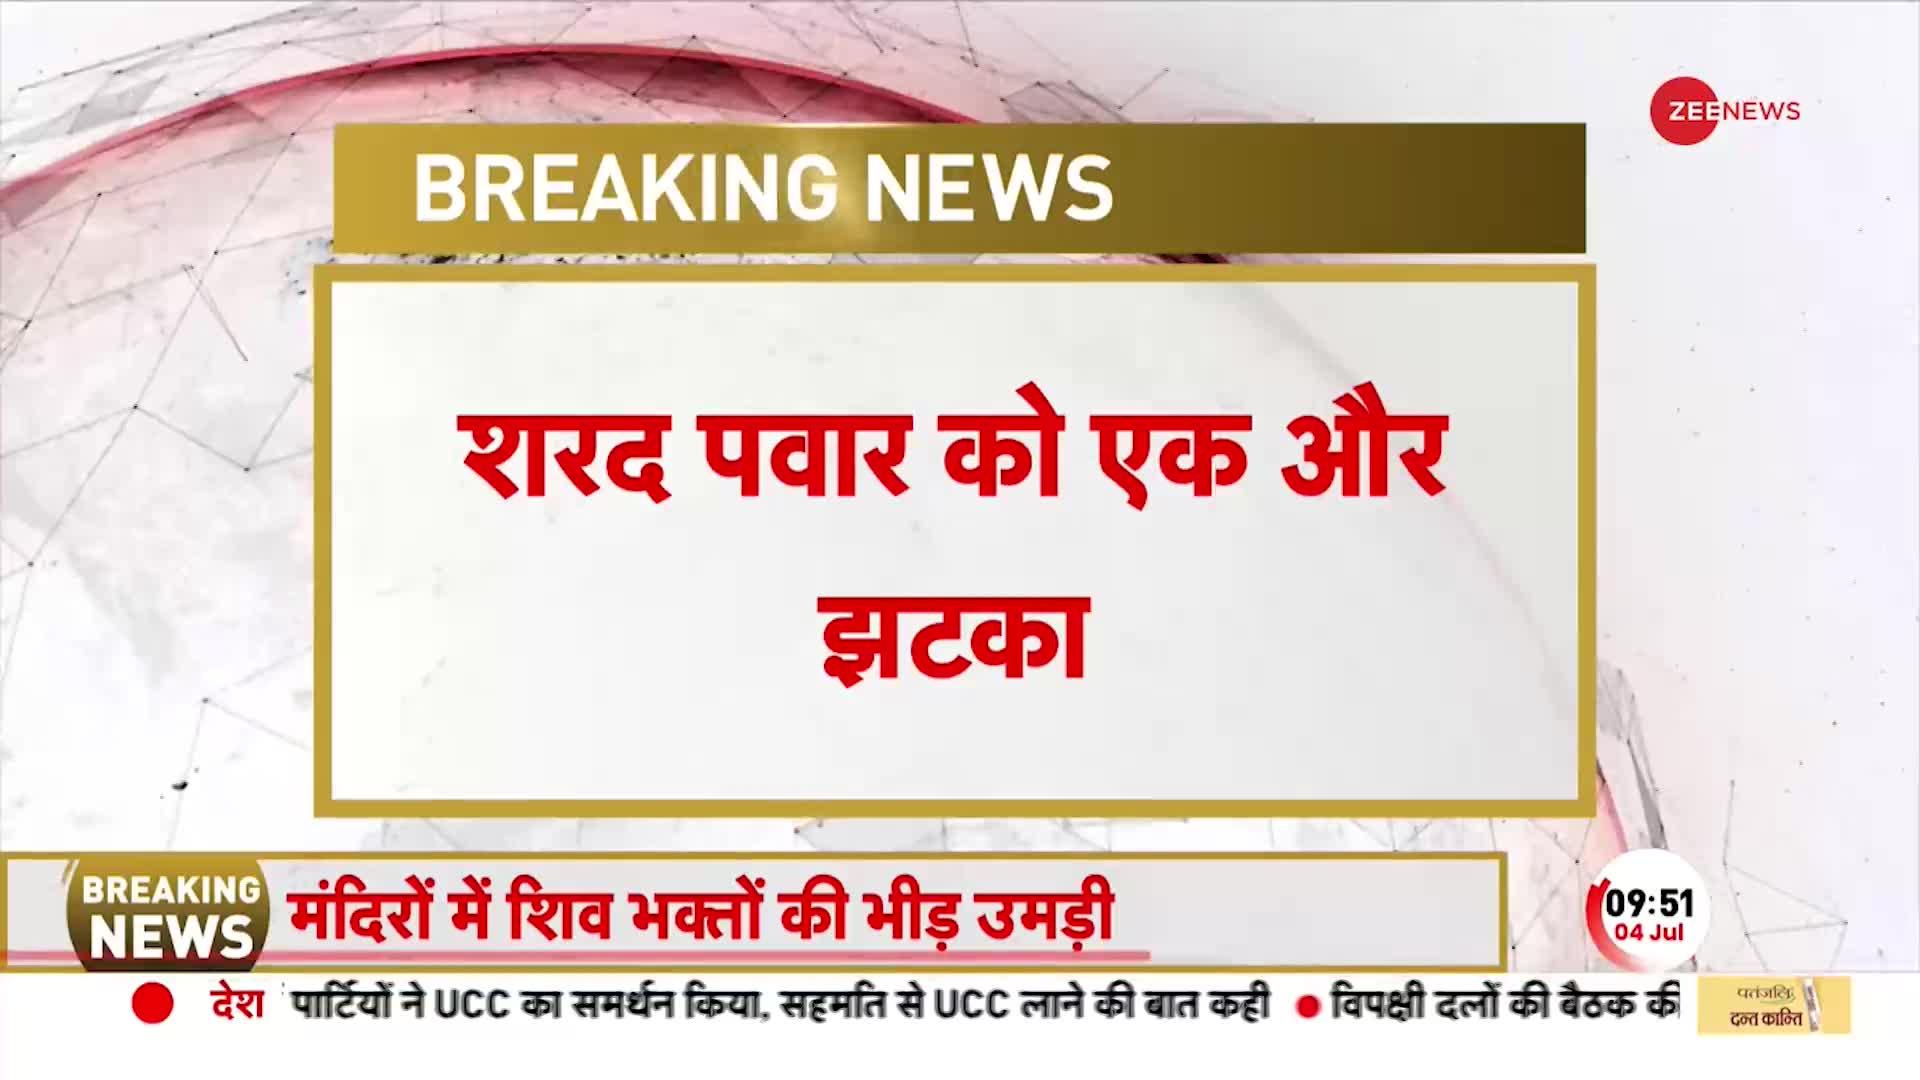 Breaking News: Sharad Pawar को बड़ा झटका, MLA प्राजक्त तनपुरे अजीत पवार से मिलने पहुंचे